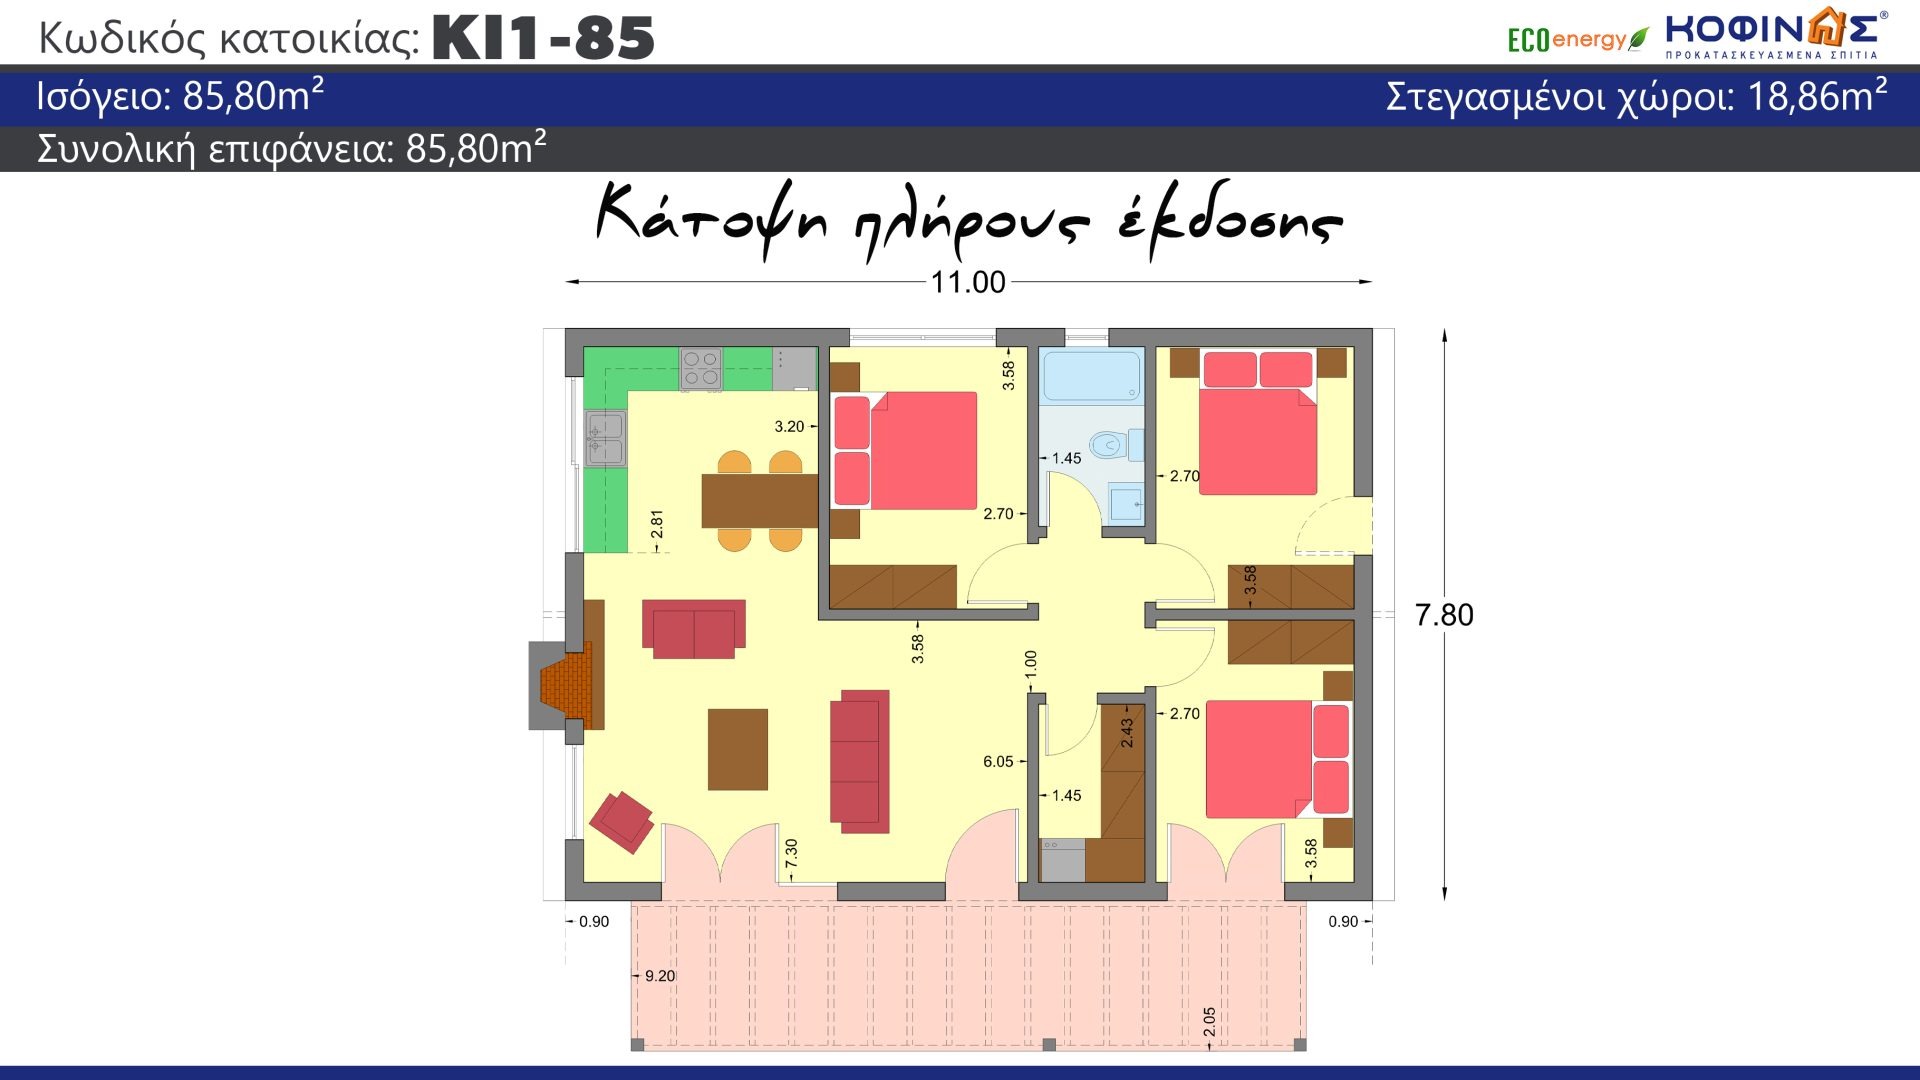 Ισόγεια Κατοικία ΚI1-85 (85,80 τ.μ.),συνολική επιφάνεια στεγασμένων χώρων 18,86τ.μ.